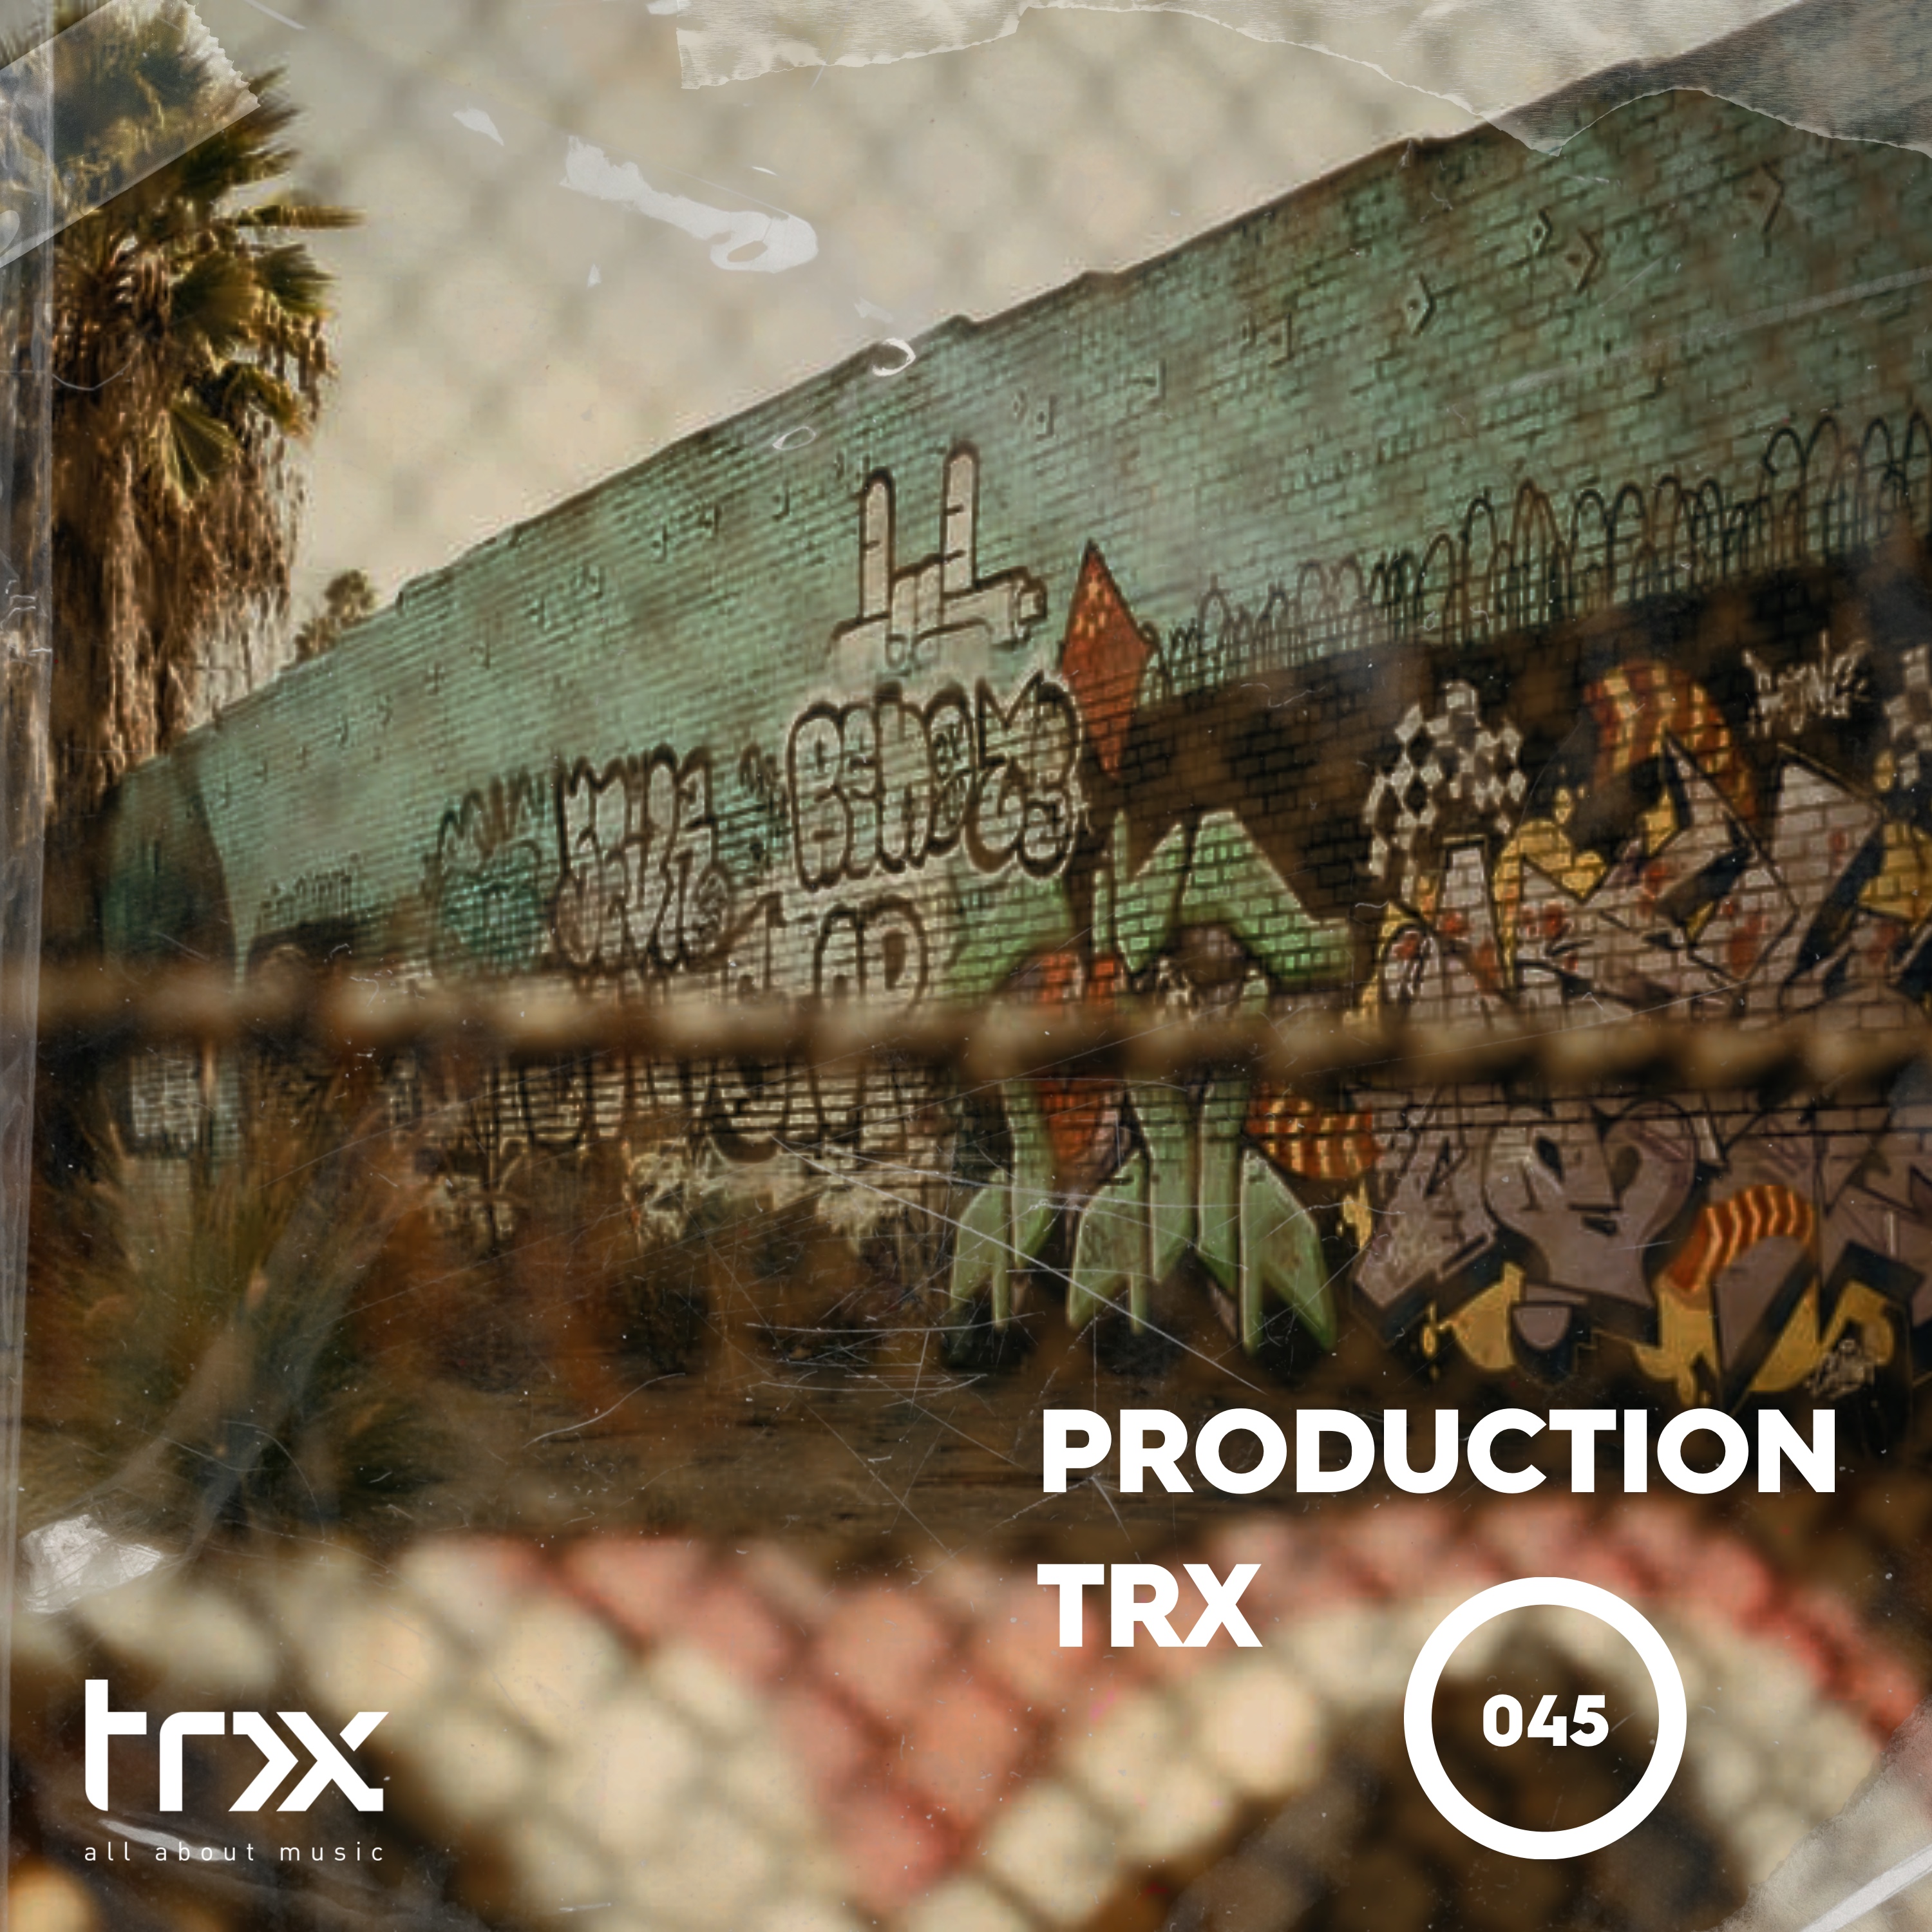 Production TRX 045